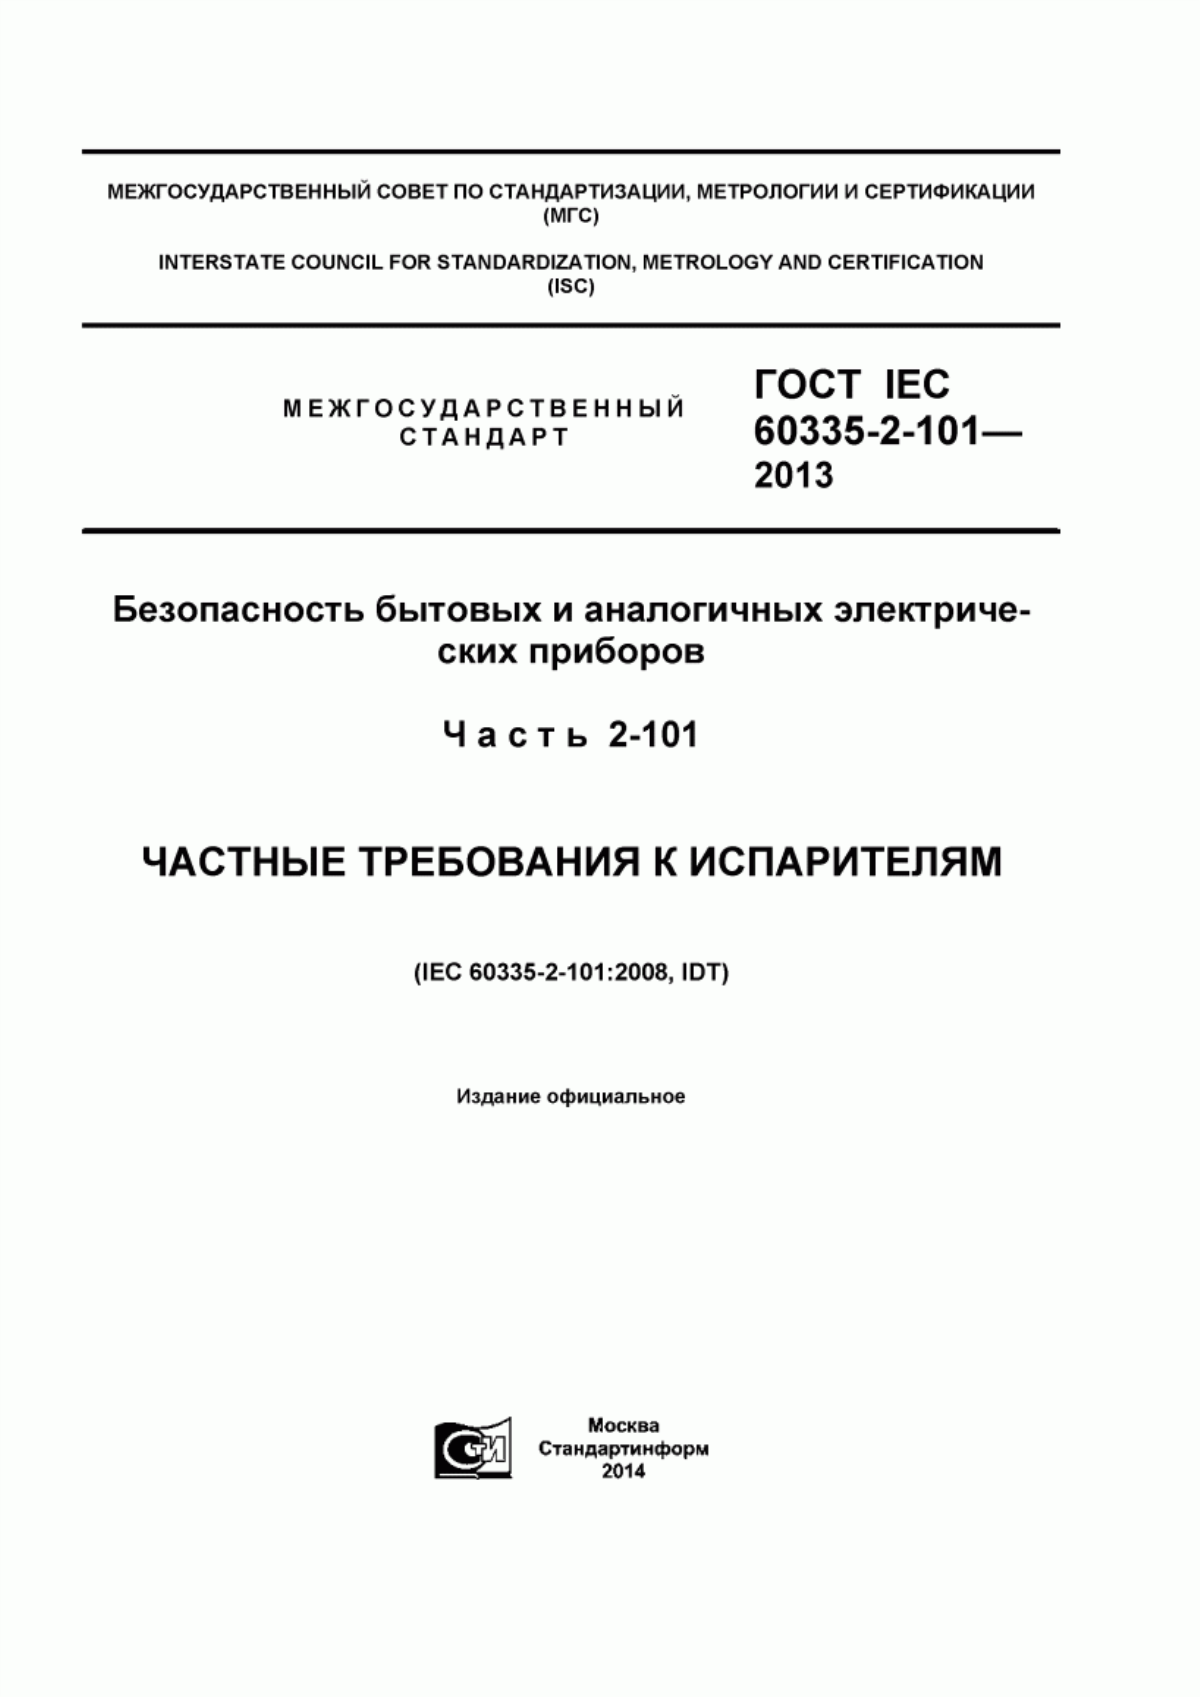 ГОСТ IEC 60335-2-101-2013 Безопасность бытовых и аналогичных электрических приборов. Часть 2-101. Частные требования к испарителям